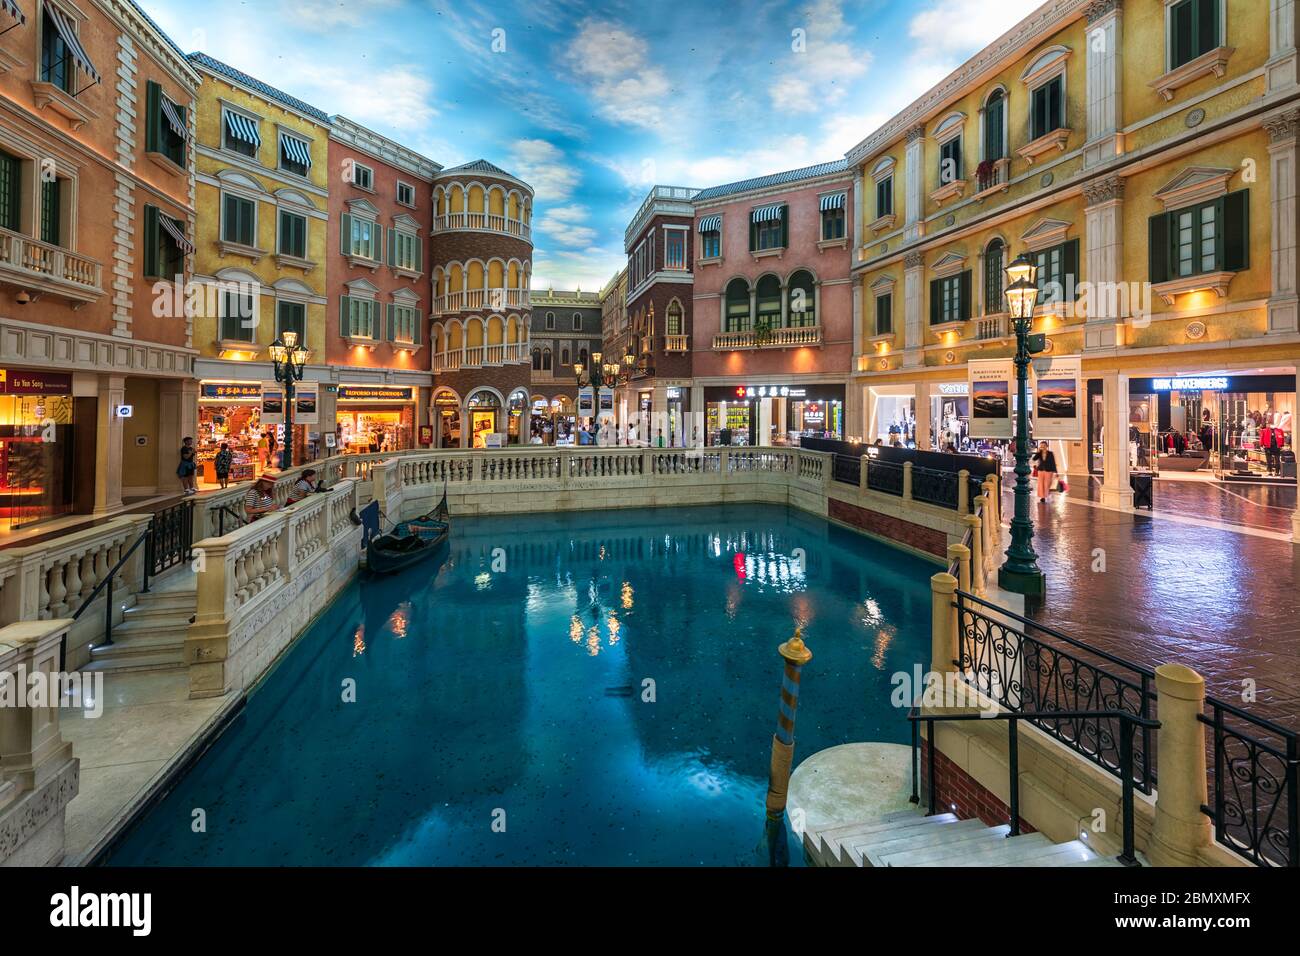 Macau, China - 16. Mai 2020: Das Venetian Macao Luxury Hotel Resort ist eines der weltweit besten Glücksspiel-Destinationen. Stockfoto